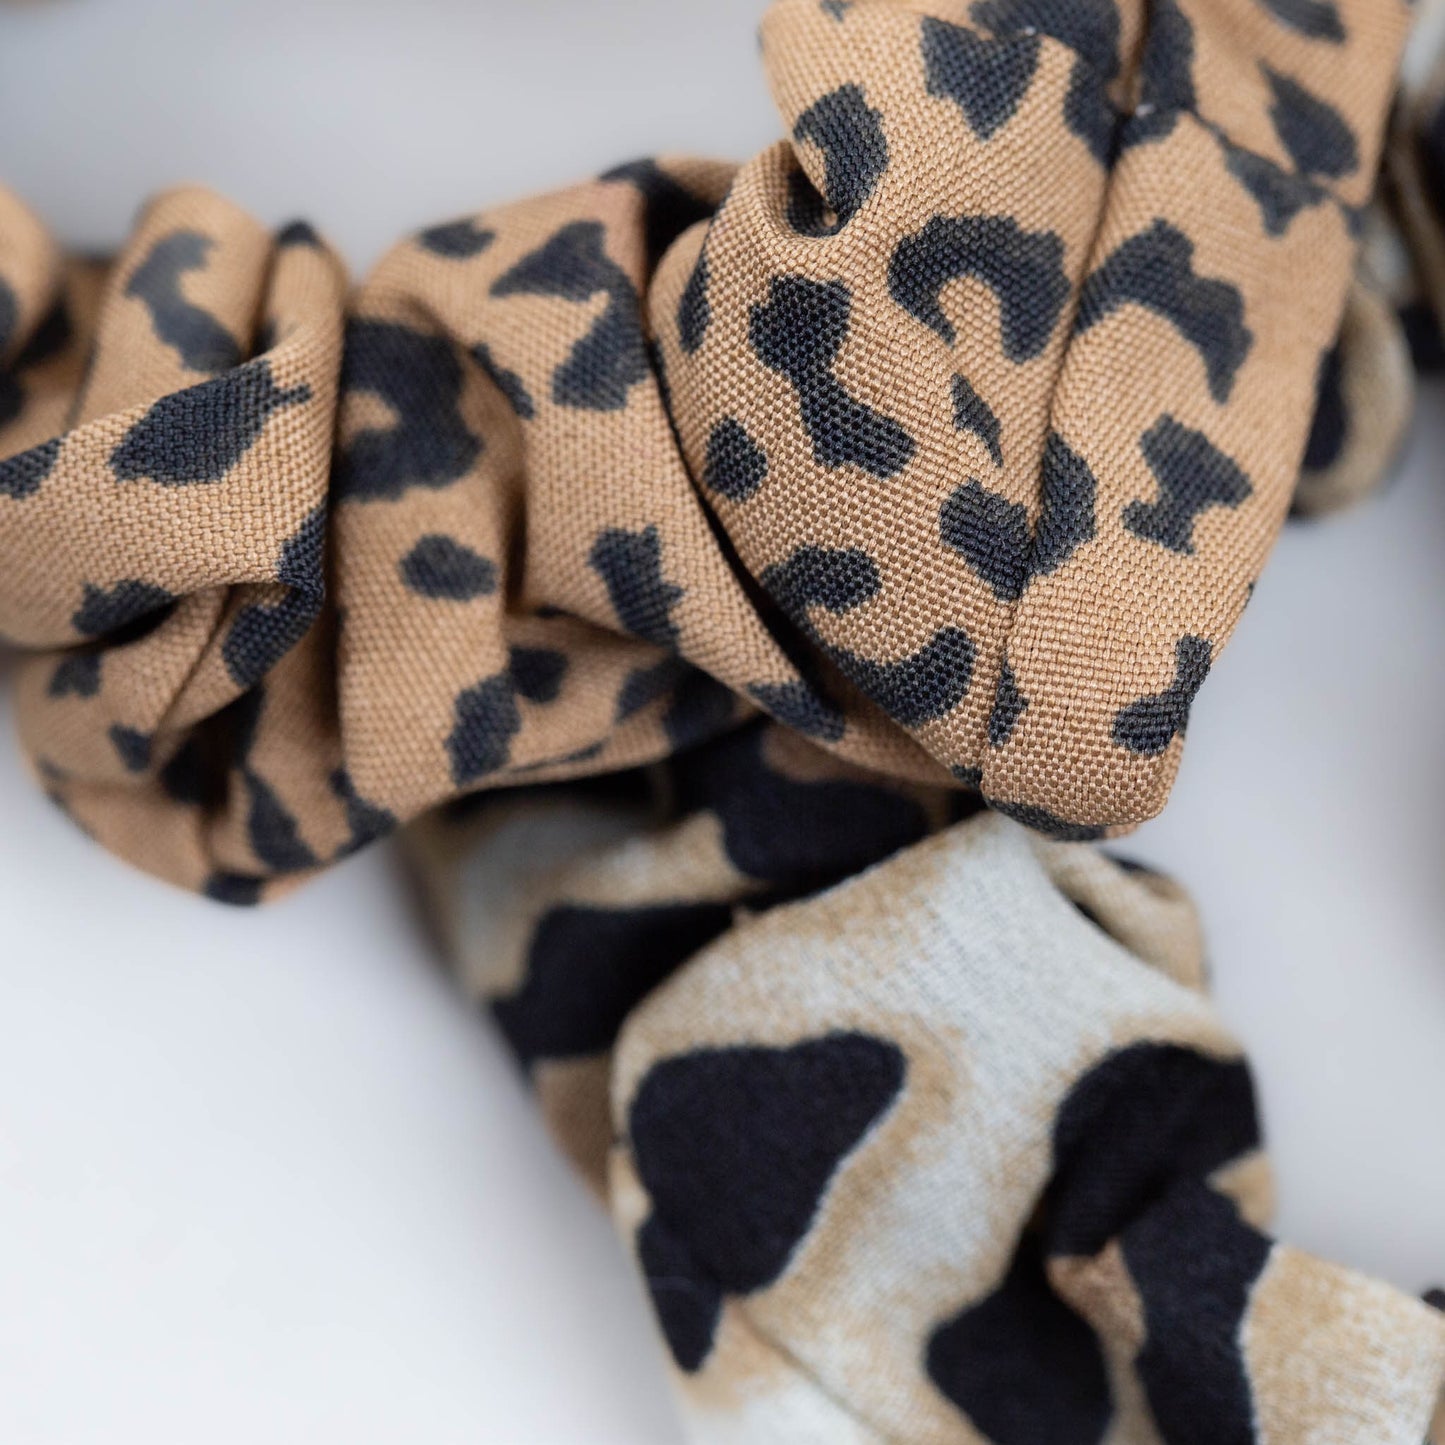 Elastice de păr tip scrunchie cu textură de satin și animal print, grosime 2 cm, set 2 buc - Maro